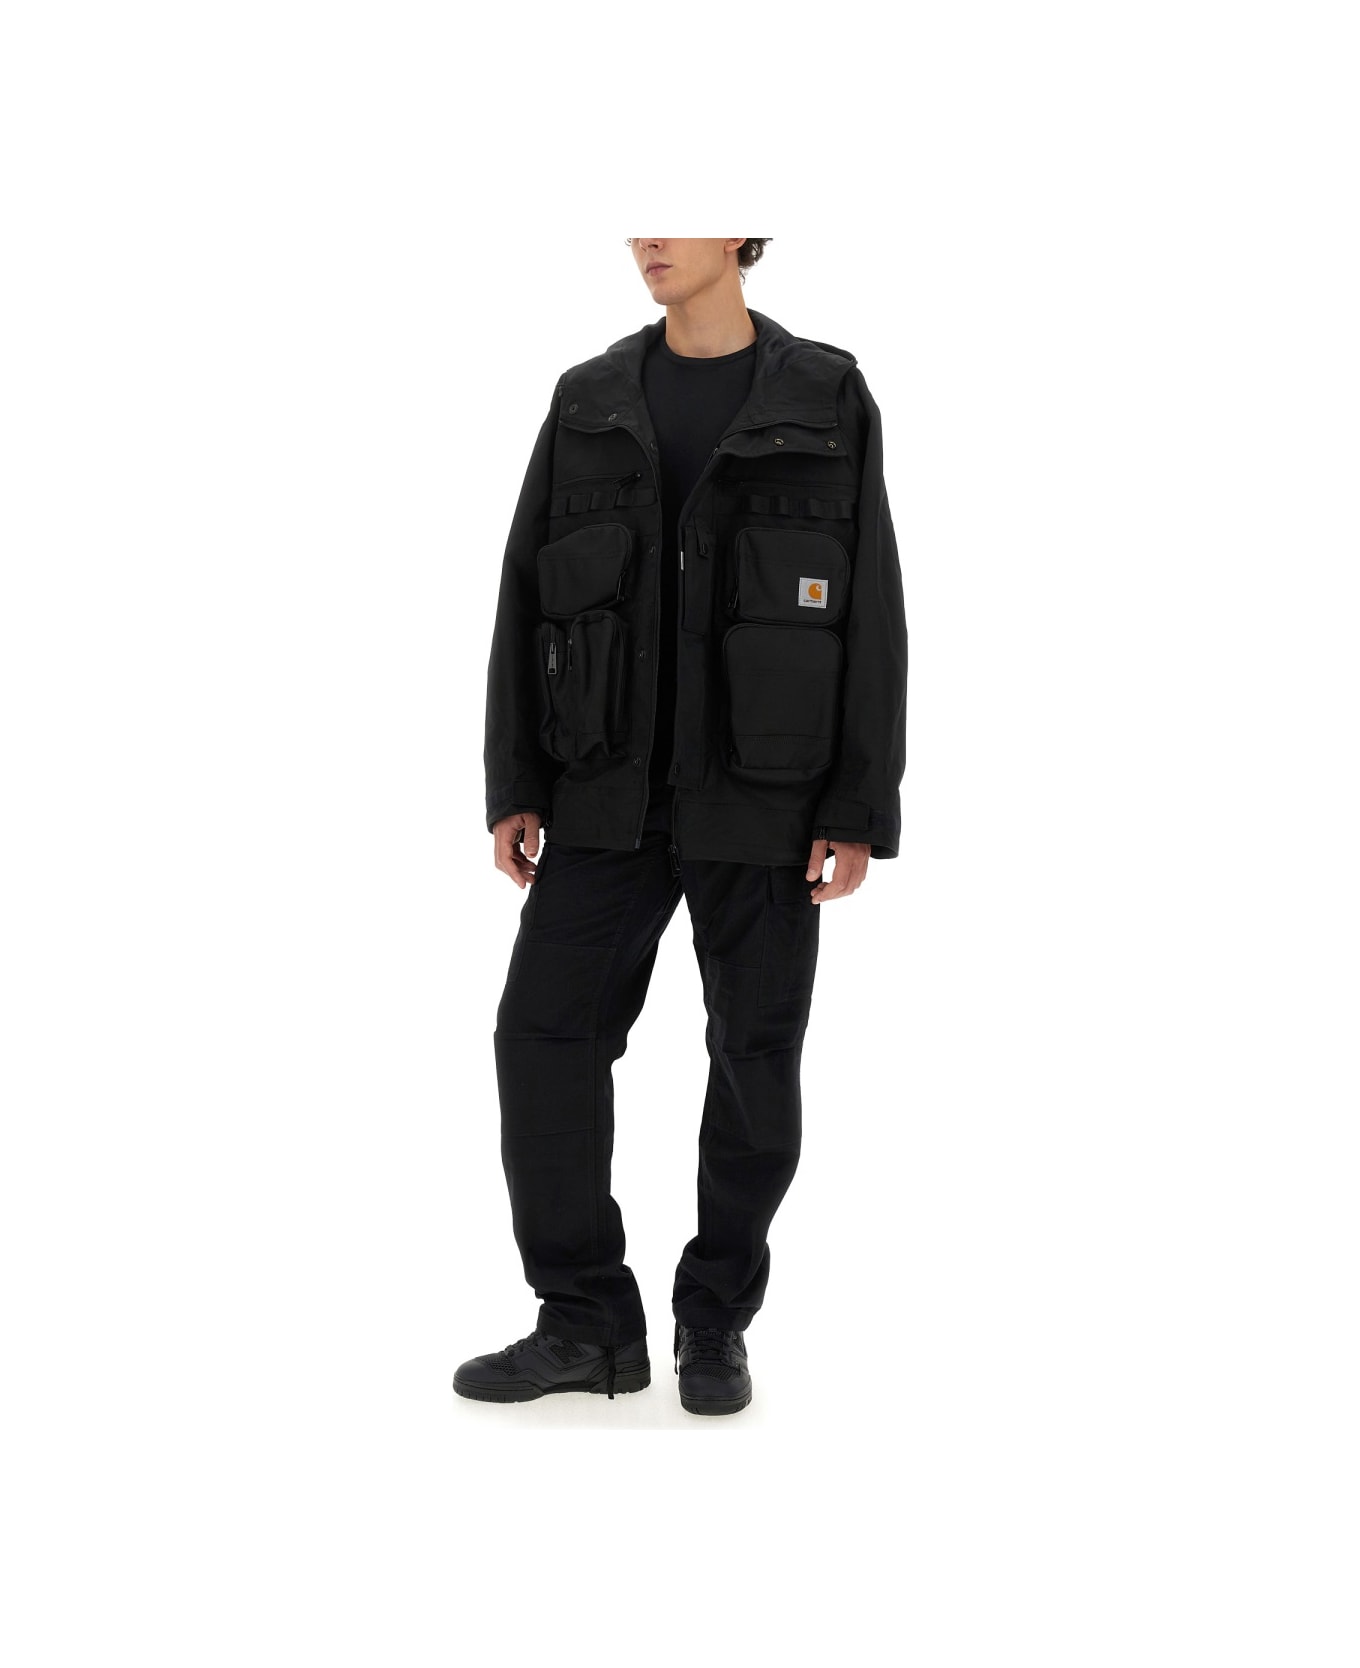 Junya Watanabe X Carhartt Jacket - BLACK ジャケット